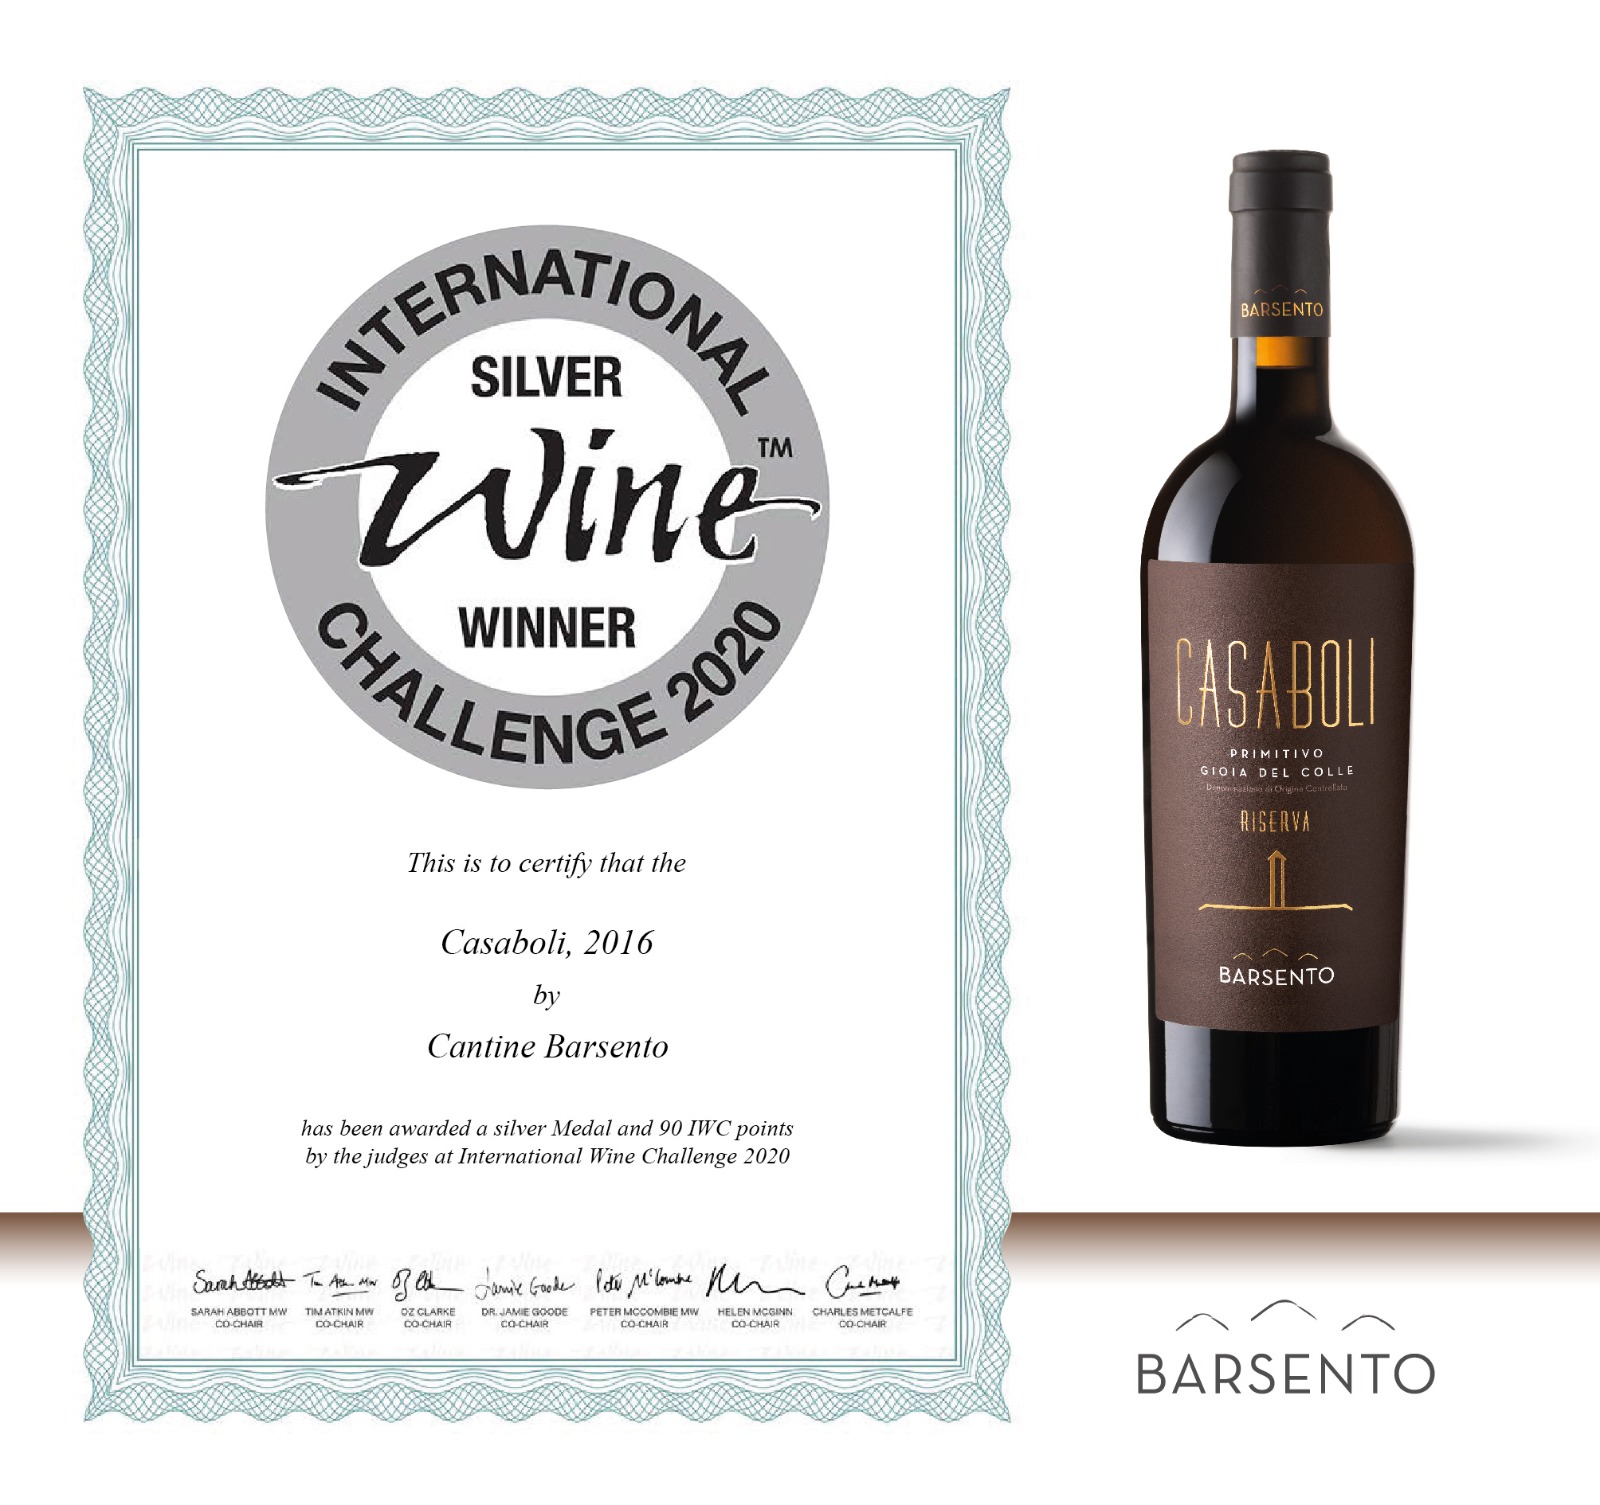 Vino Casaboli premiato con la medaglia d'argento all?International Wine Challenge